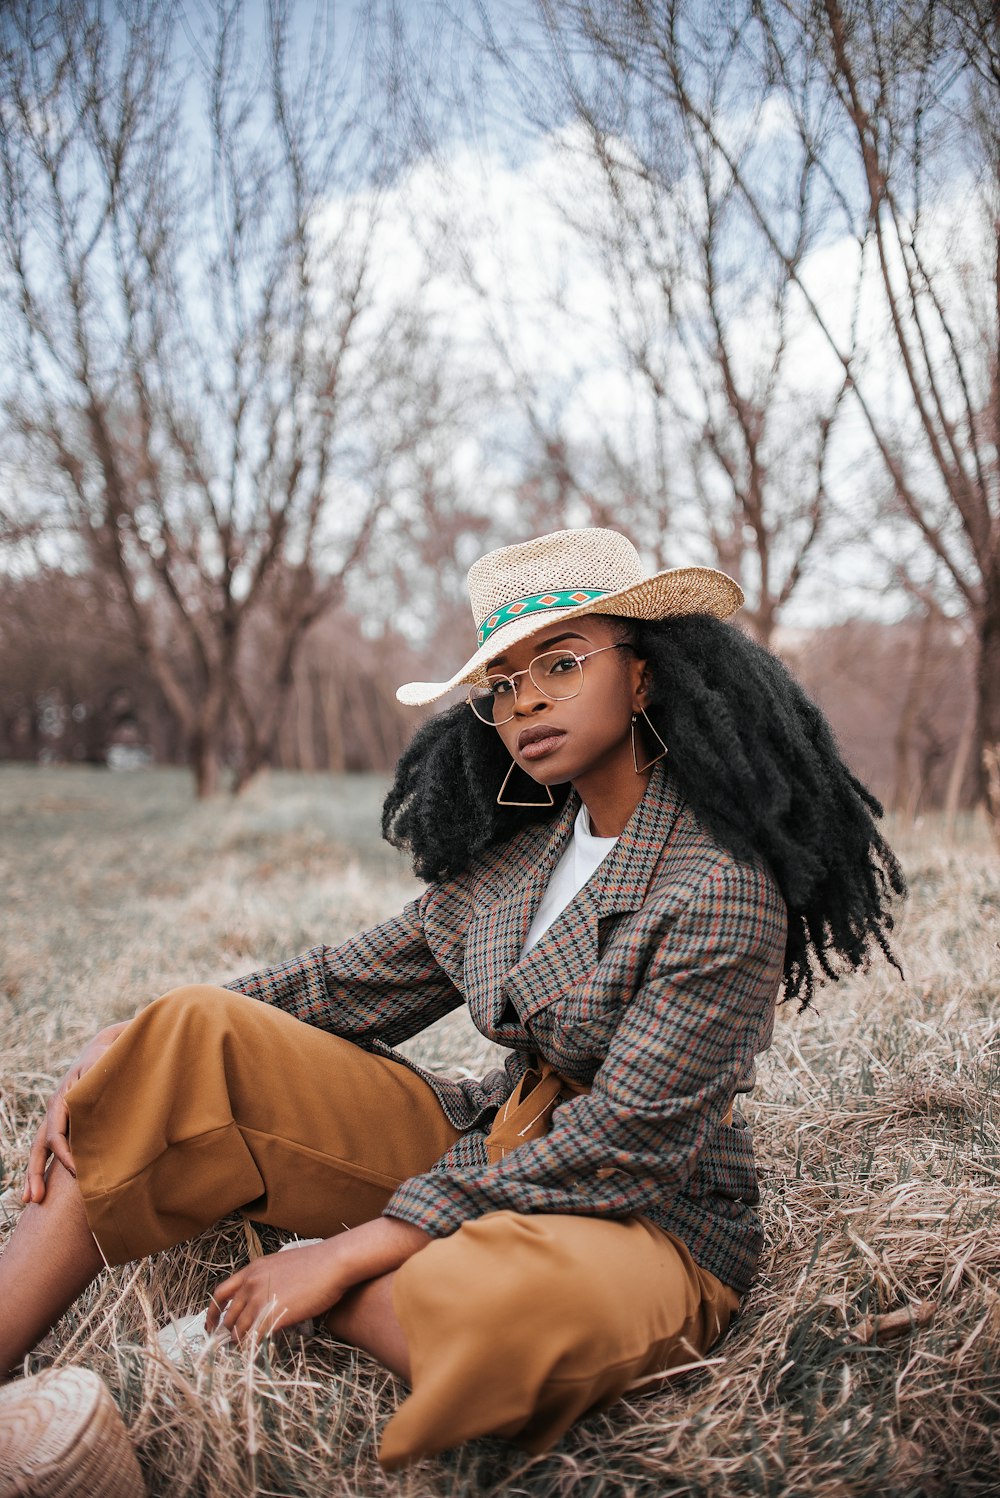 갈색 코트와 베이지색 모자를 쓴 여자가 낮 동안 갈색 잔디에 앉아 있다